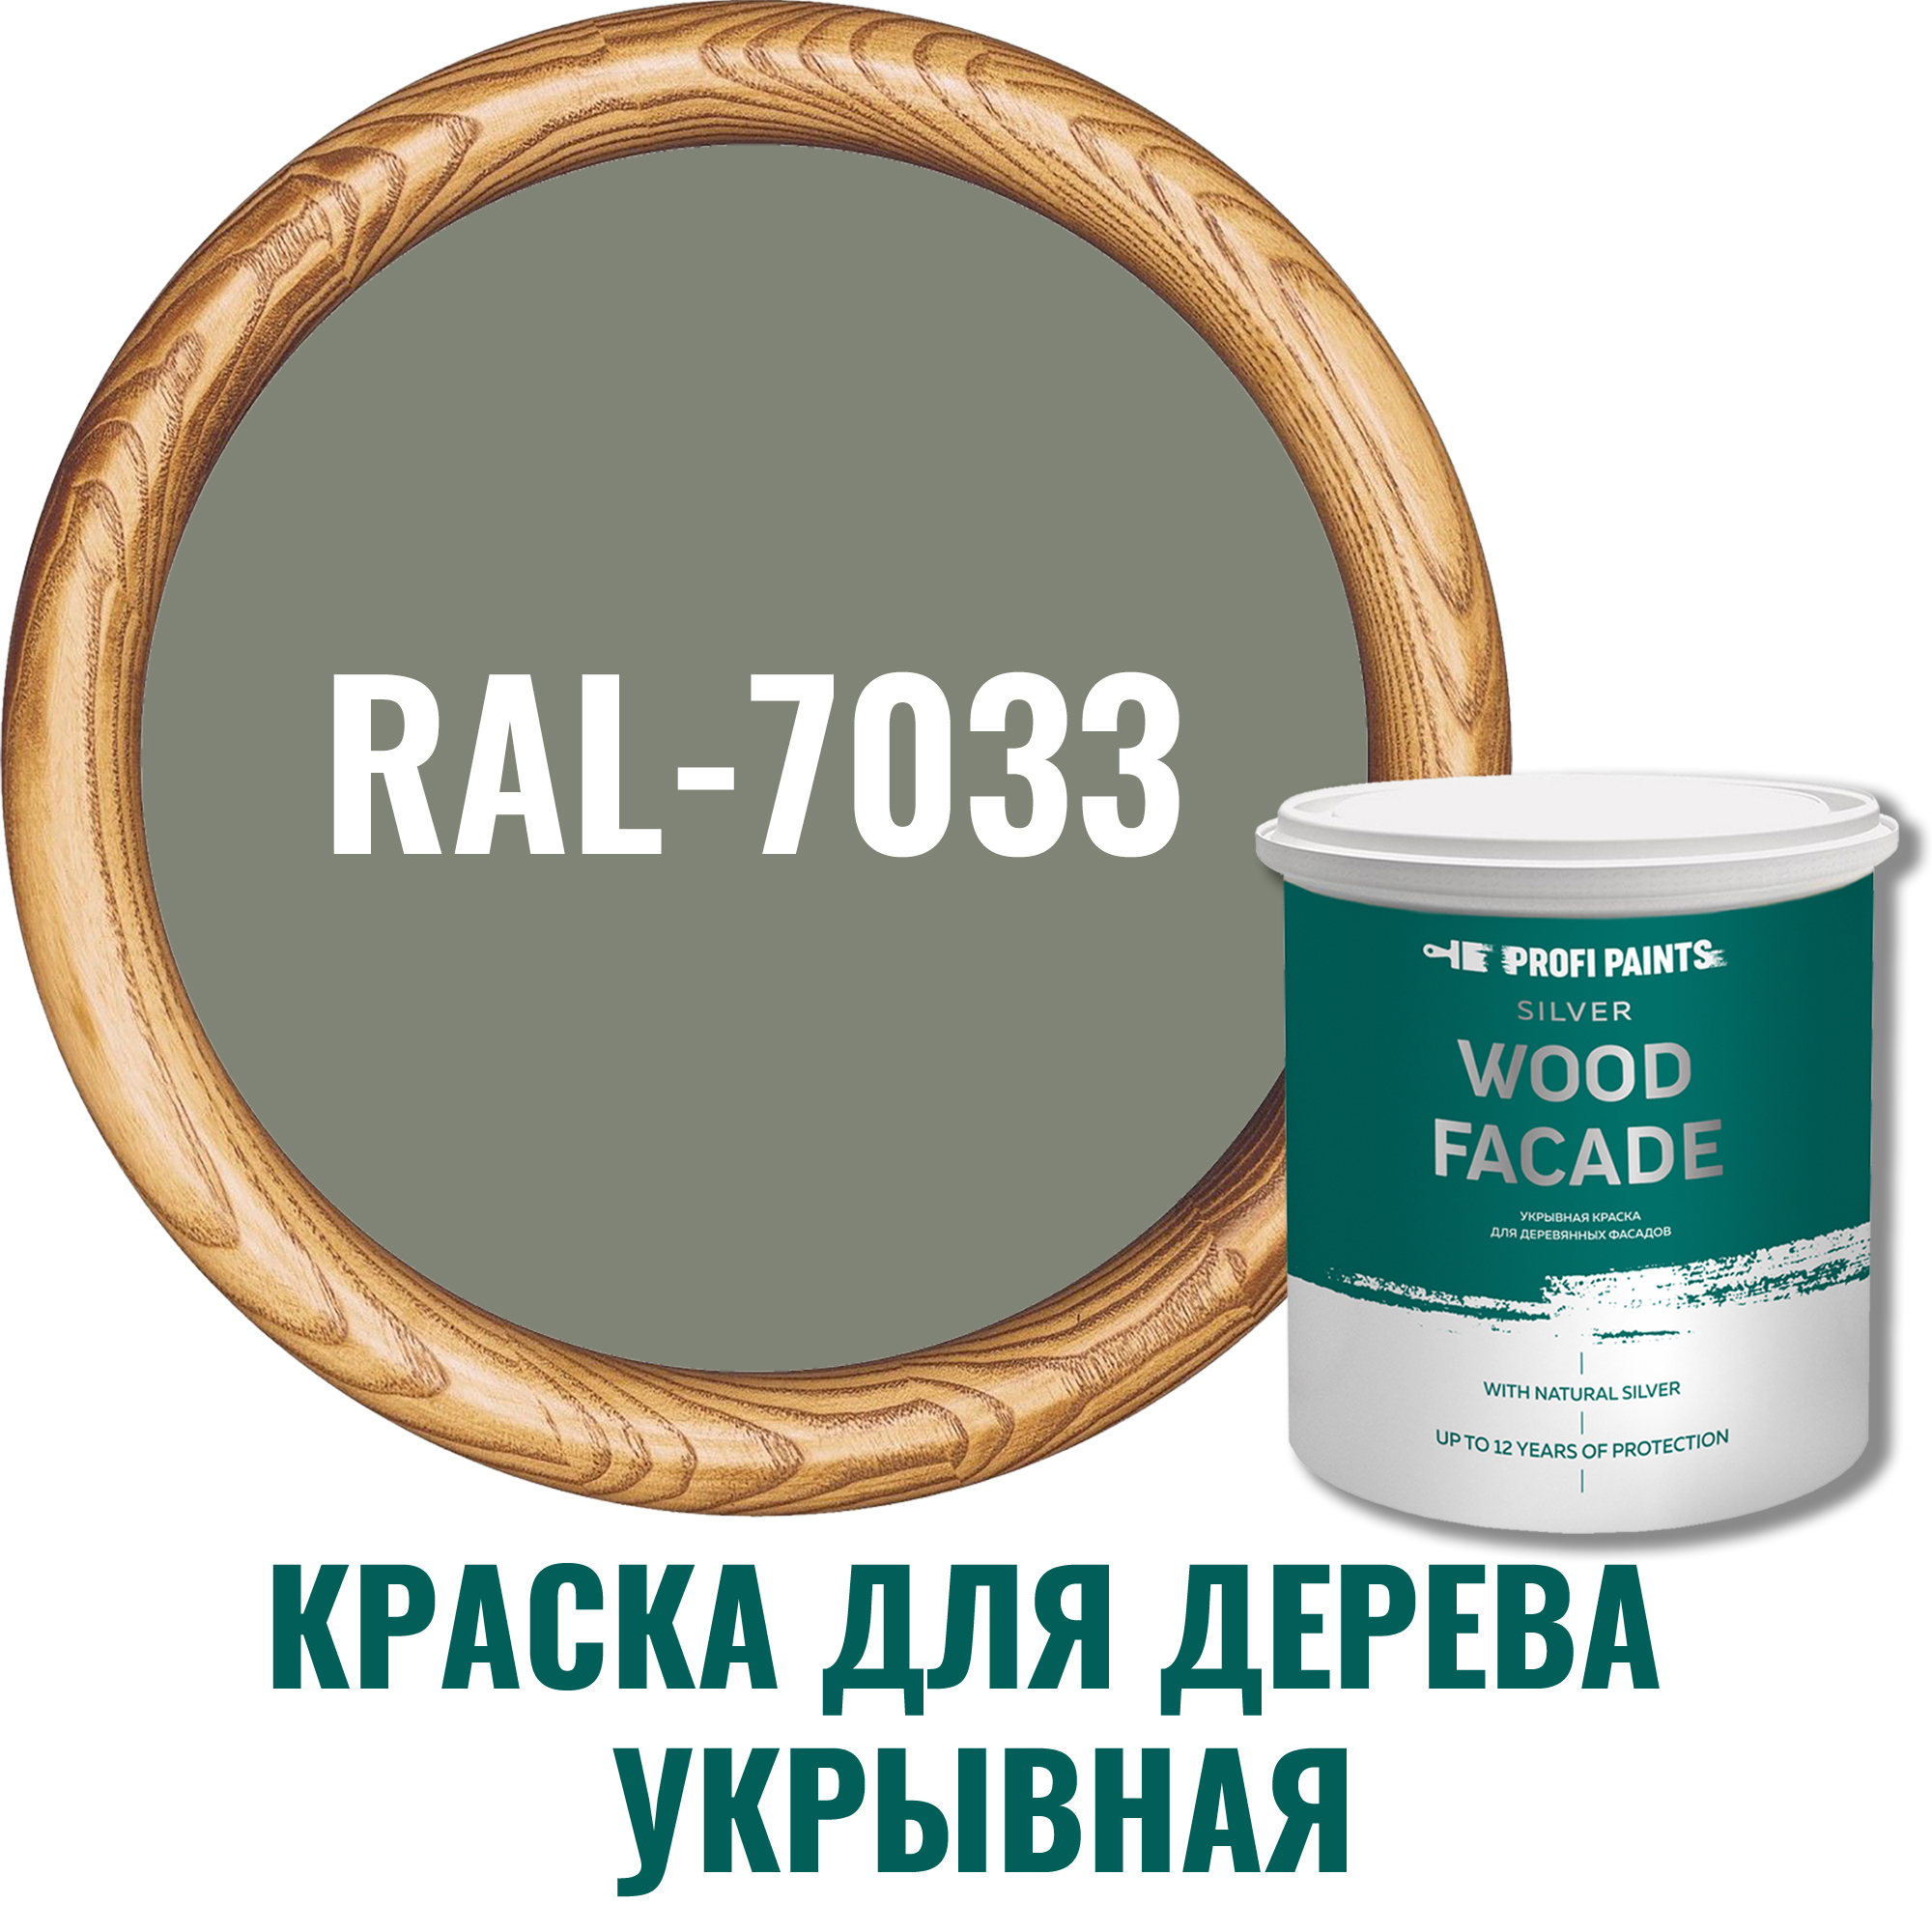 91106641 Краска для дерева 11282_D SILVER WOOD FASADE цвет RAL-7033 серый цемент 2.7 л STLM-0487633 PROFIPAINTS